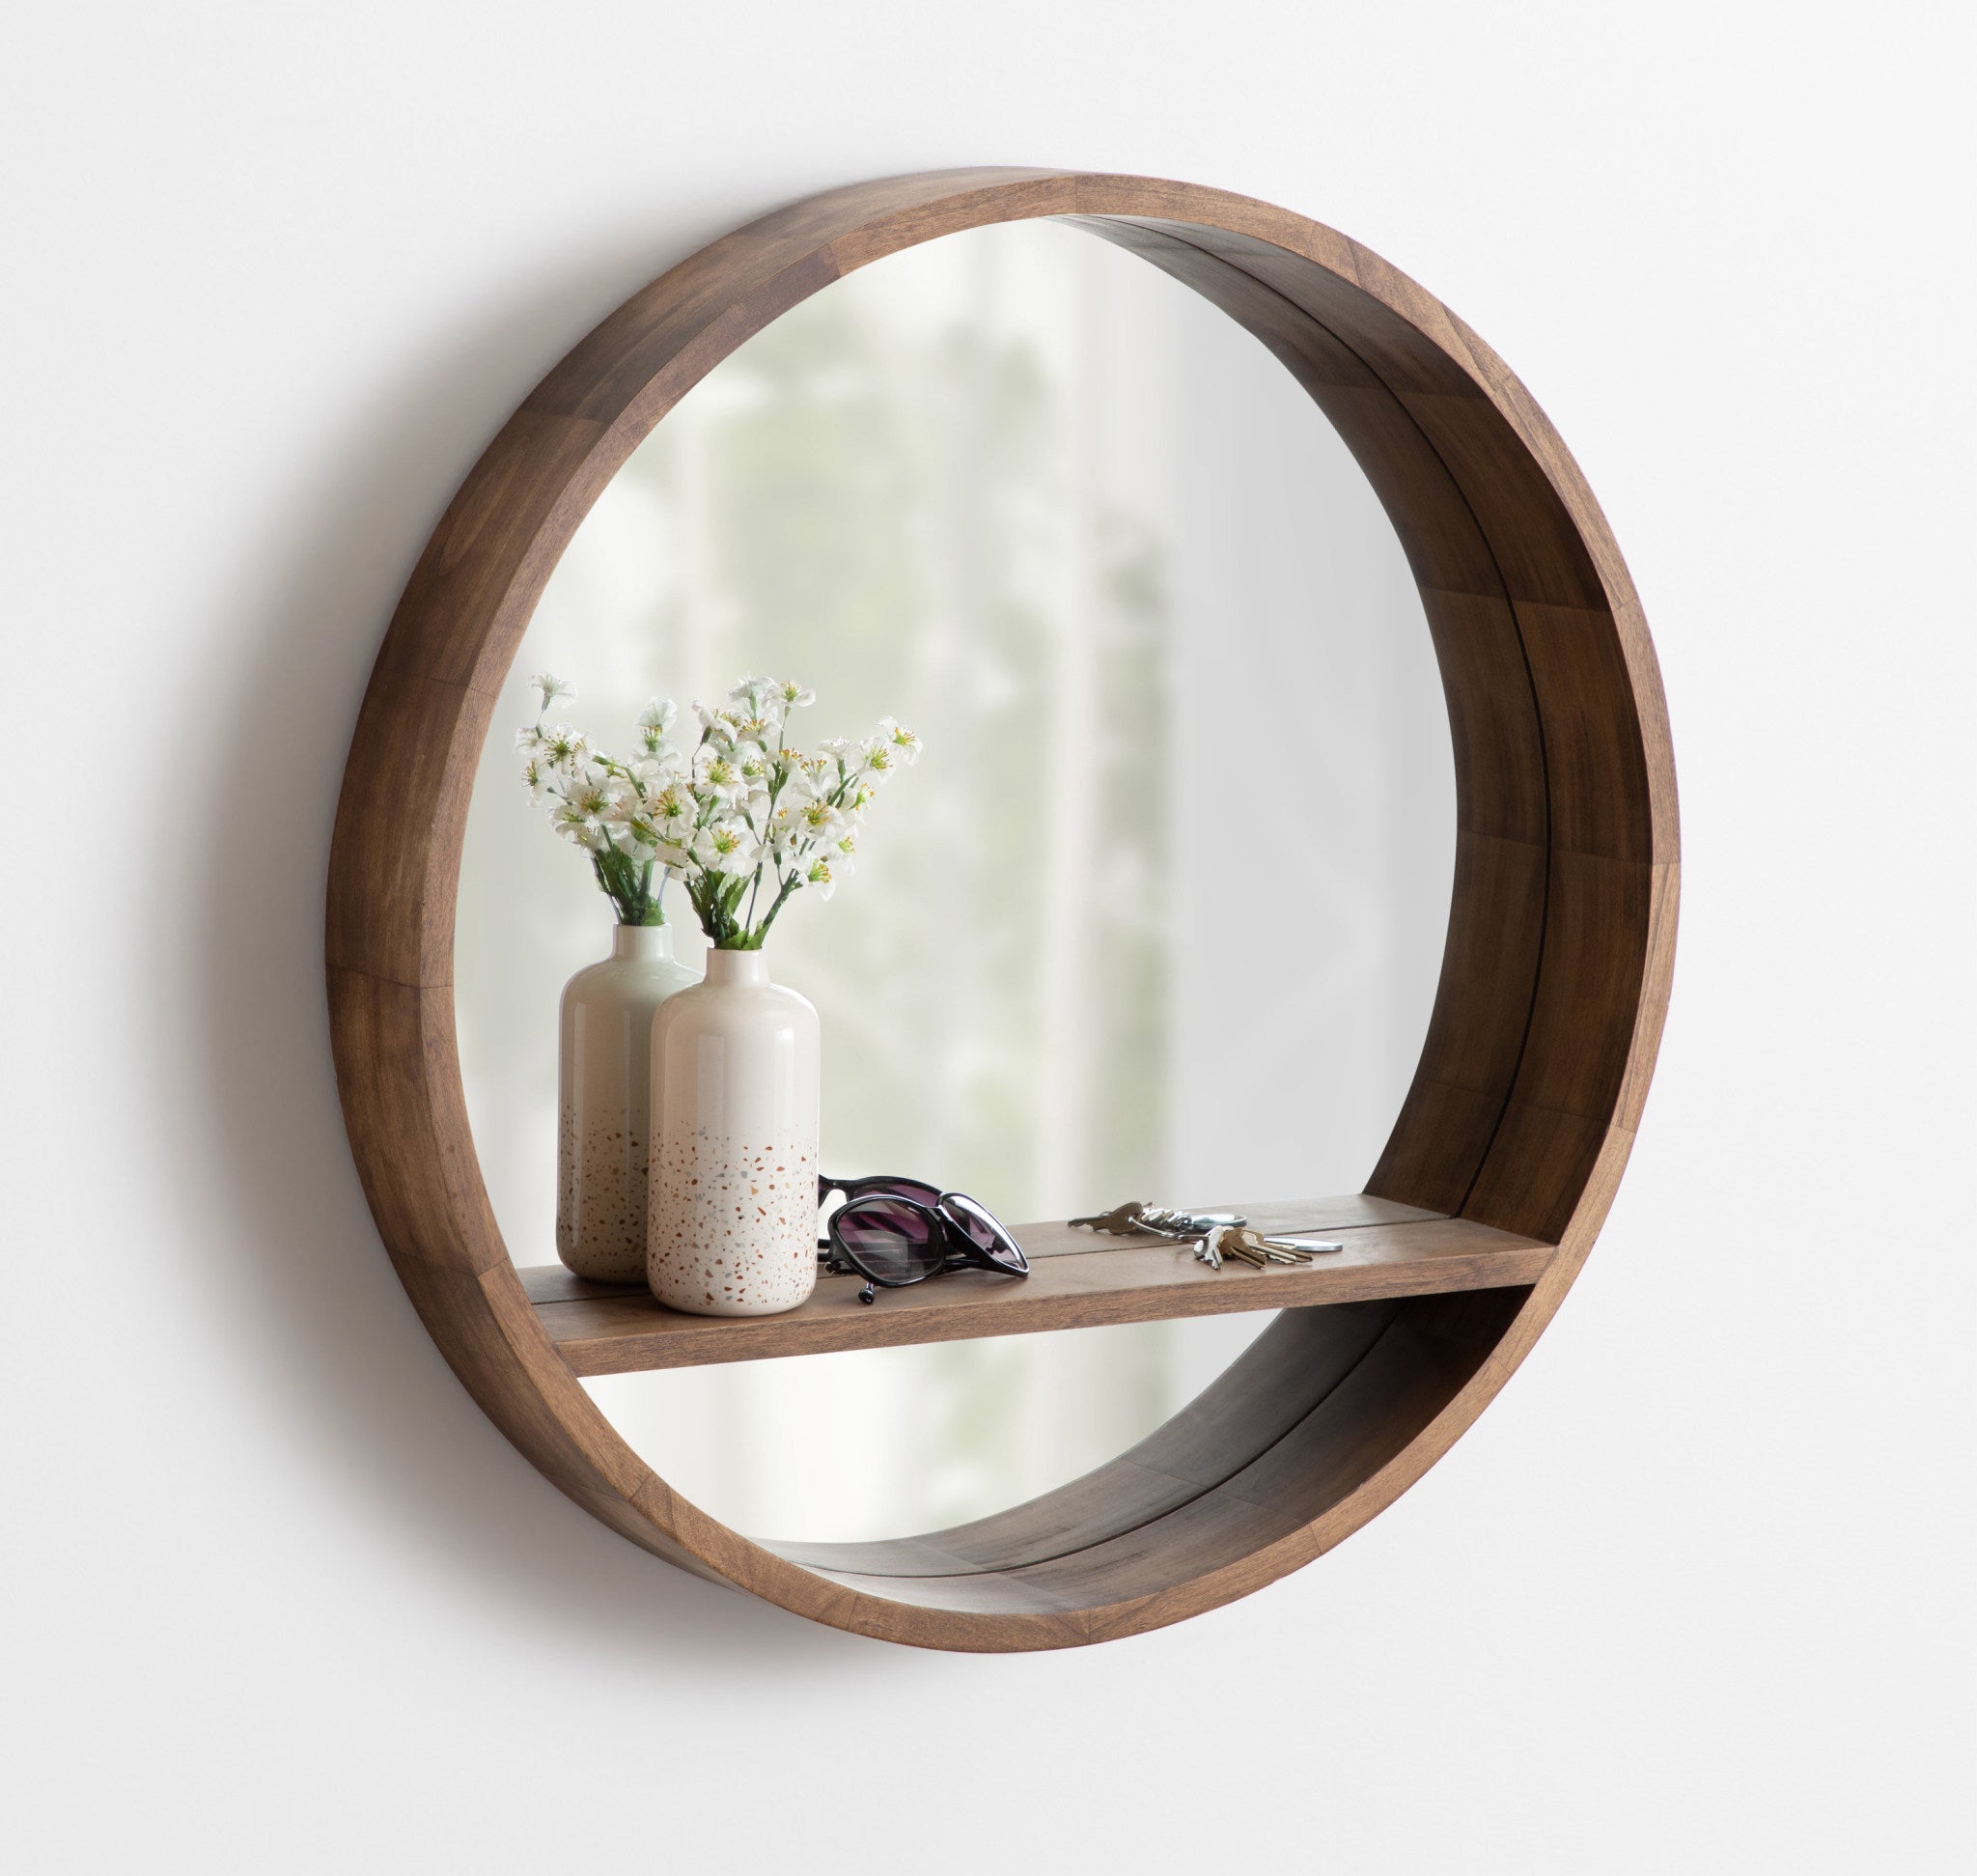 Hutton Round Mirror with Shelf